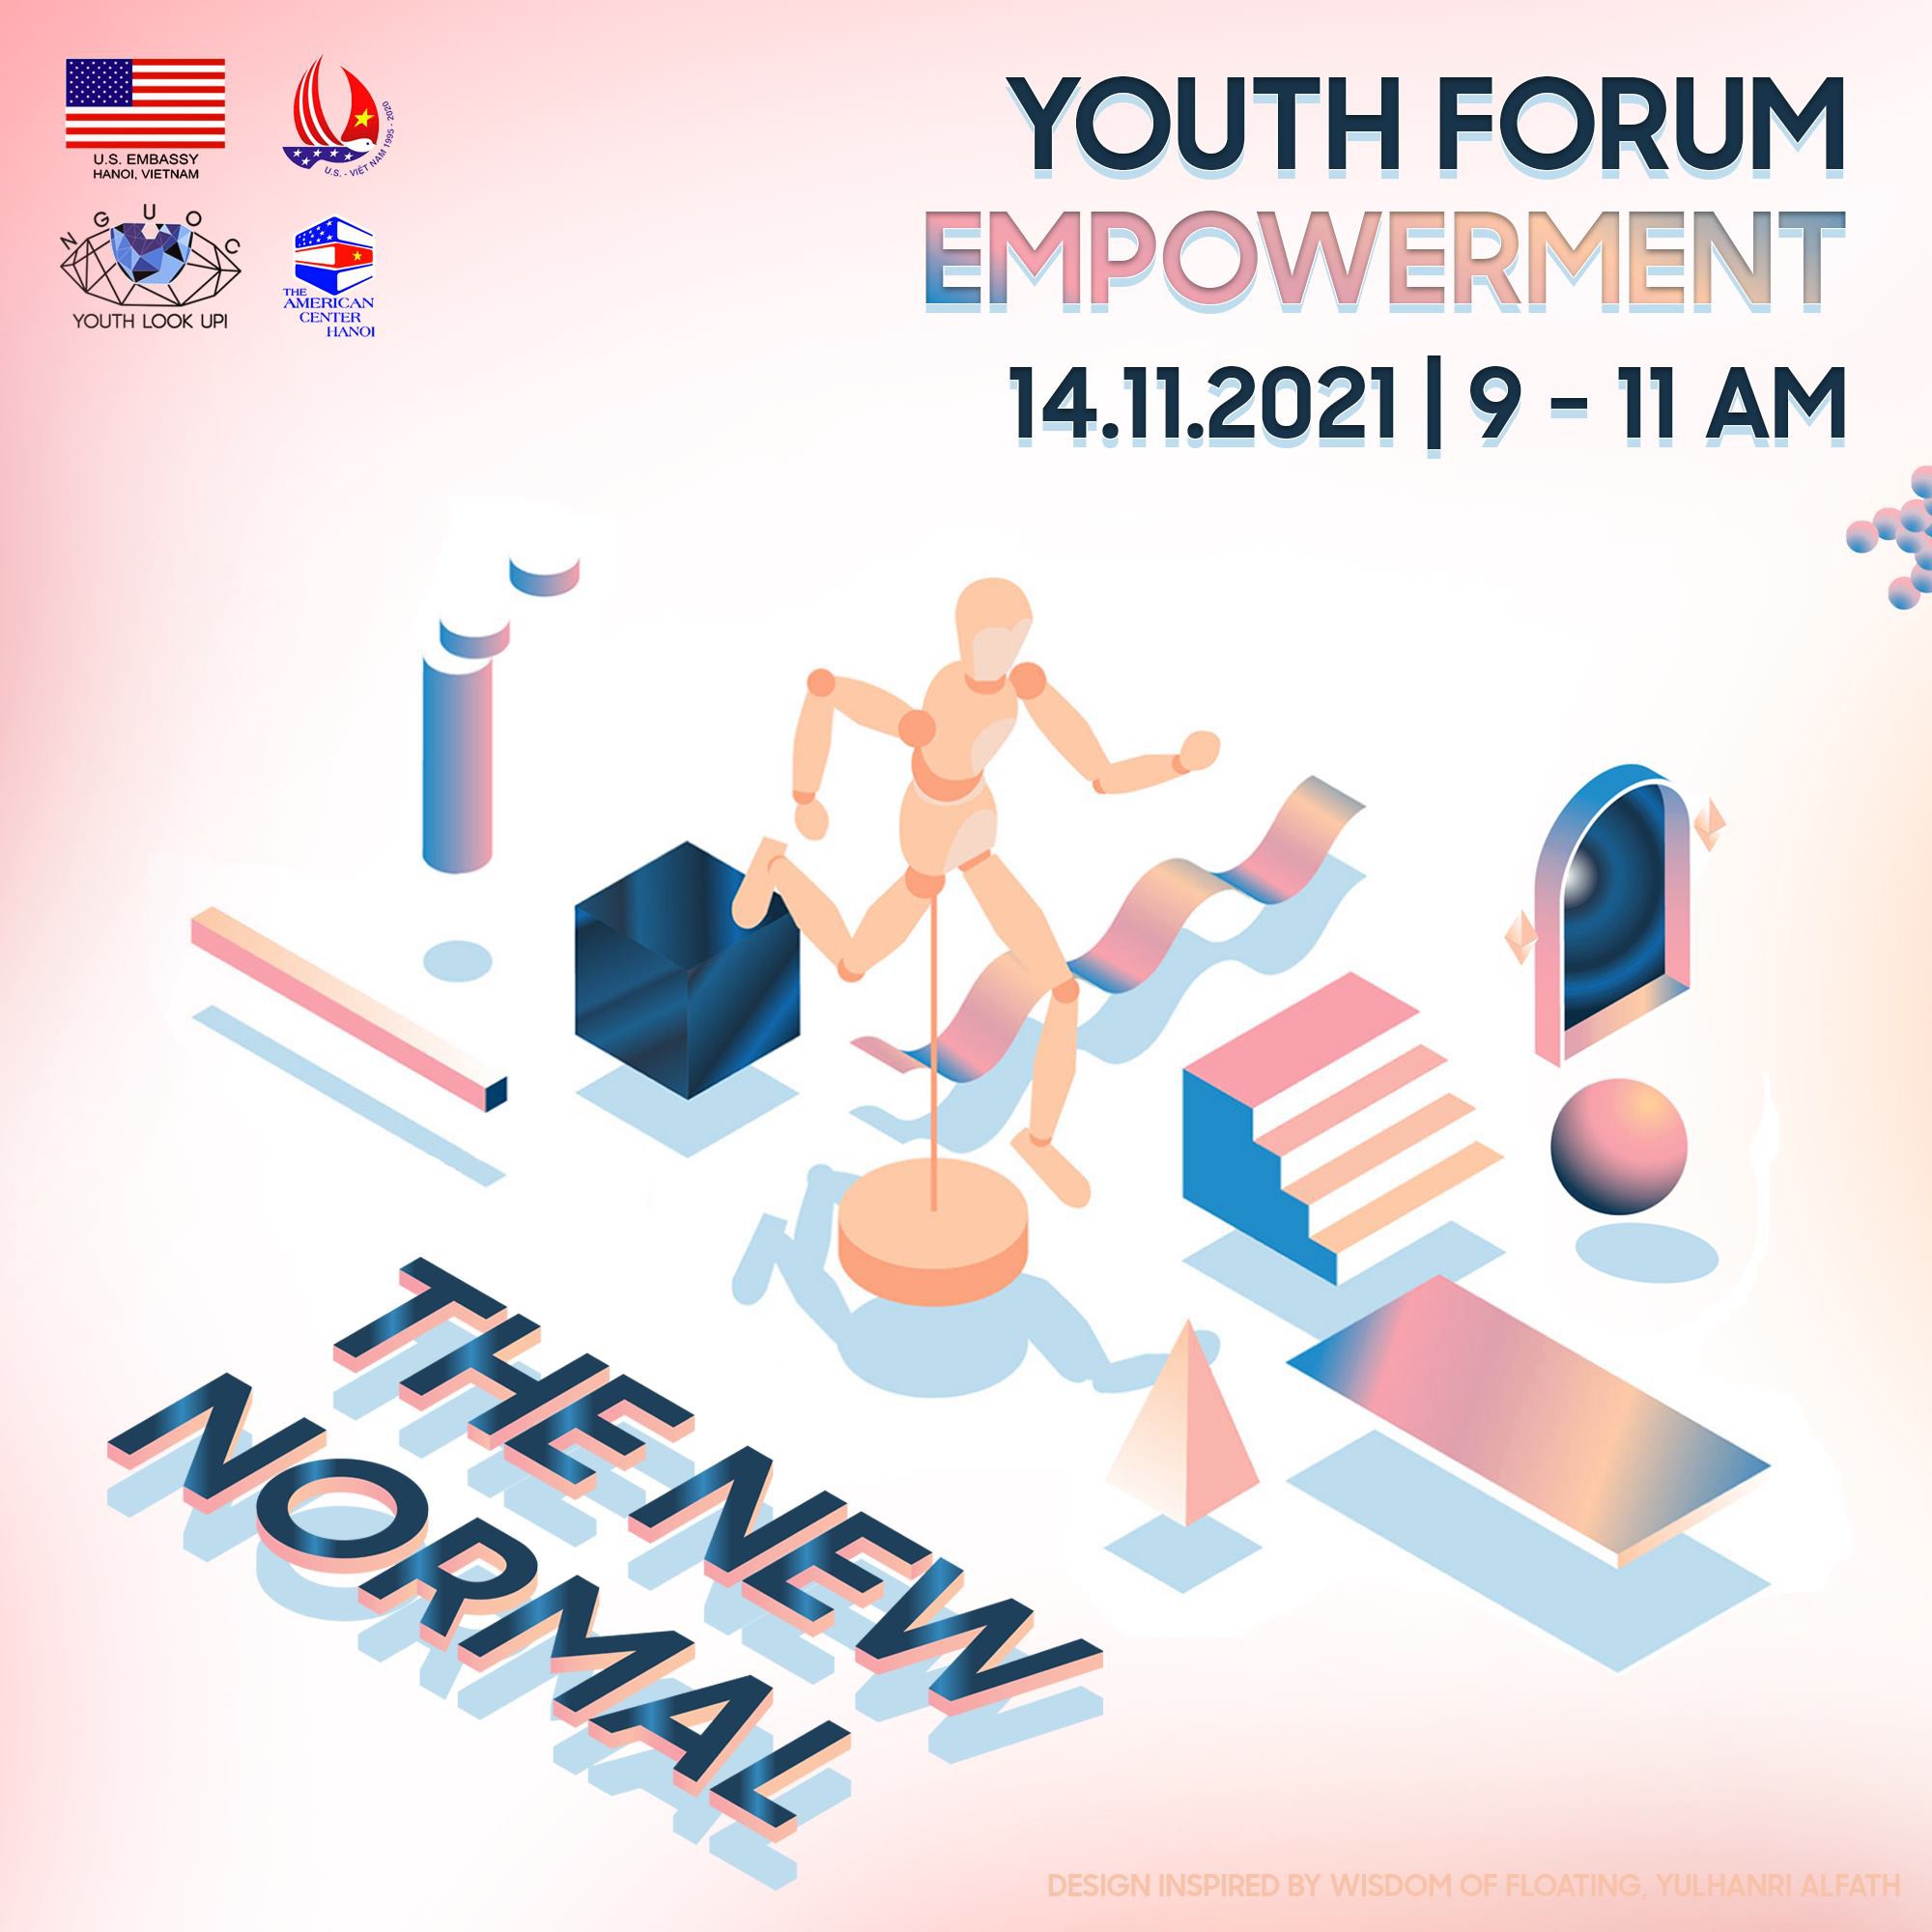 Tham gia miễn phí sự kiện Youth Forum Empowerment - The New Normal và rinh về Giấy chứng nhận nhé